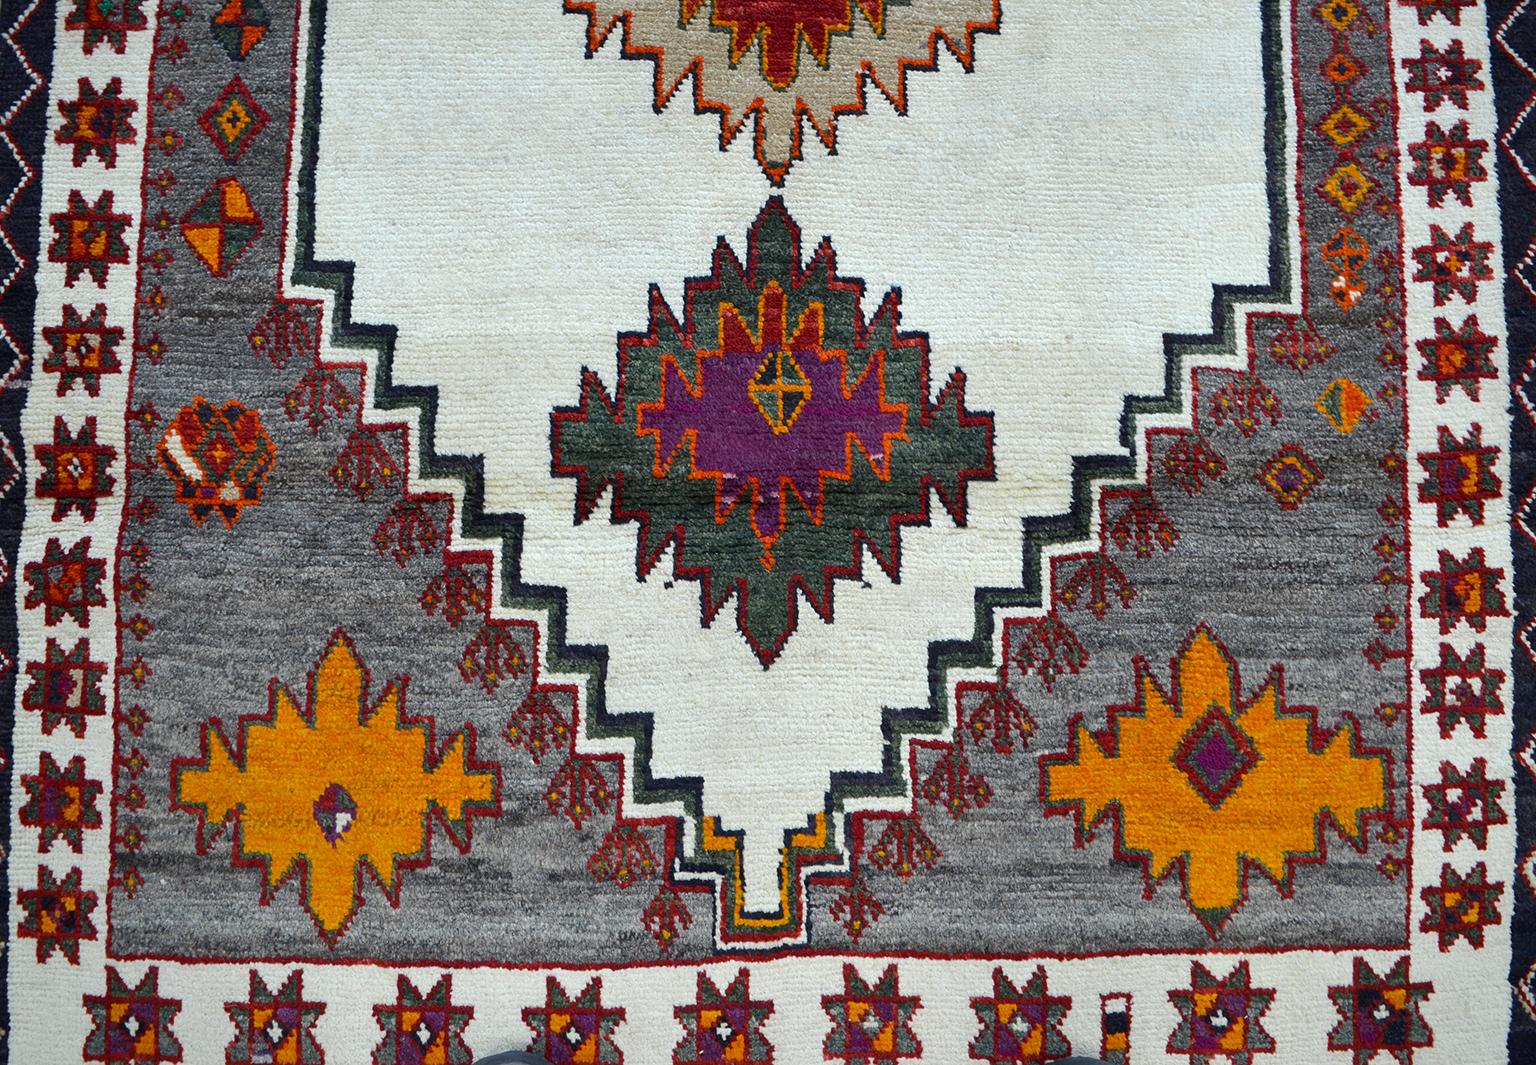 Dieser alte persische Gabbeh-Teppich um 1940 aus reiner handgesponnener Wolle und organischen Farbstoffen weist eine einzigartige Färbung auf, die aus pflanzlich gefärbter und ungefärbter Wolle besteht. Tiefes Grün, leuchtendes Orange und Violett